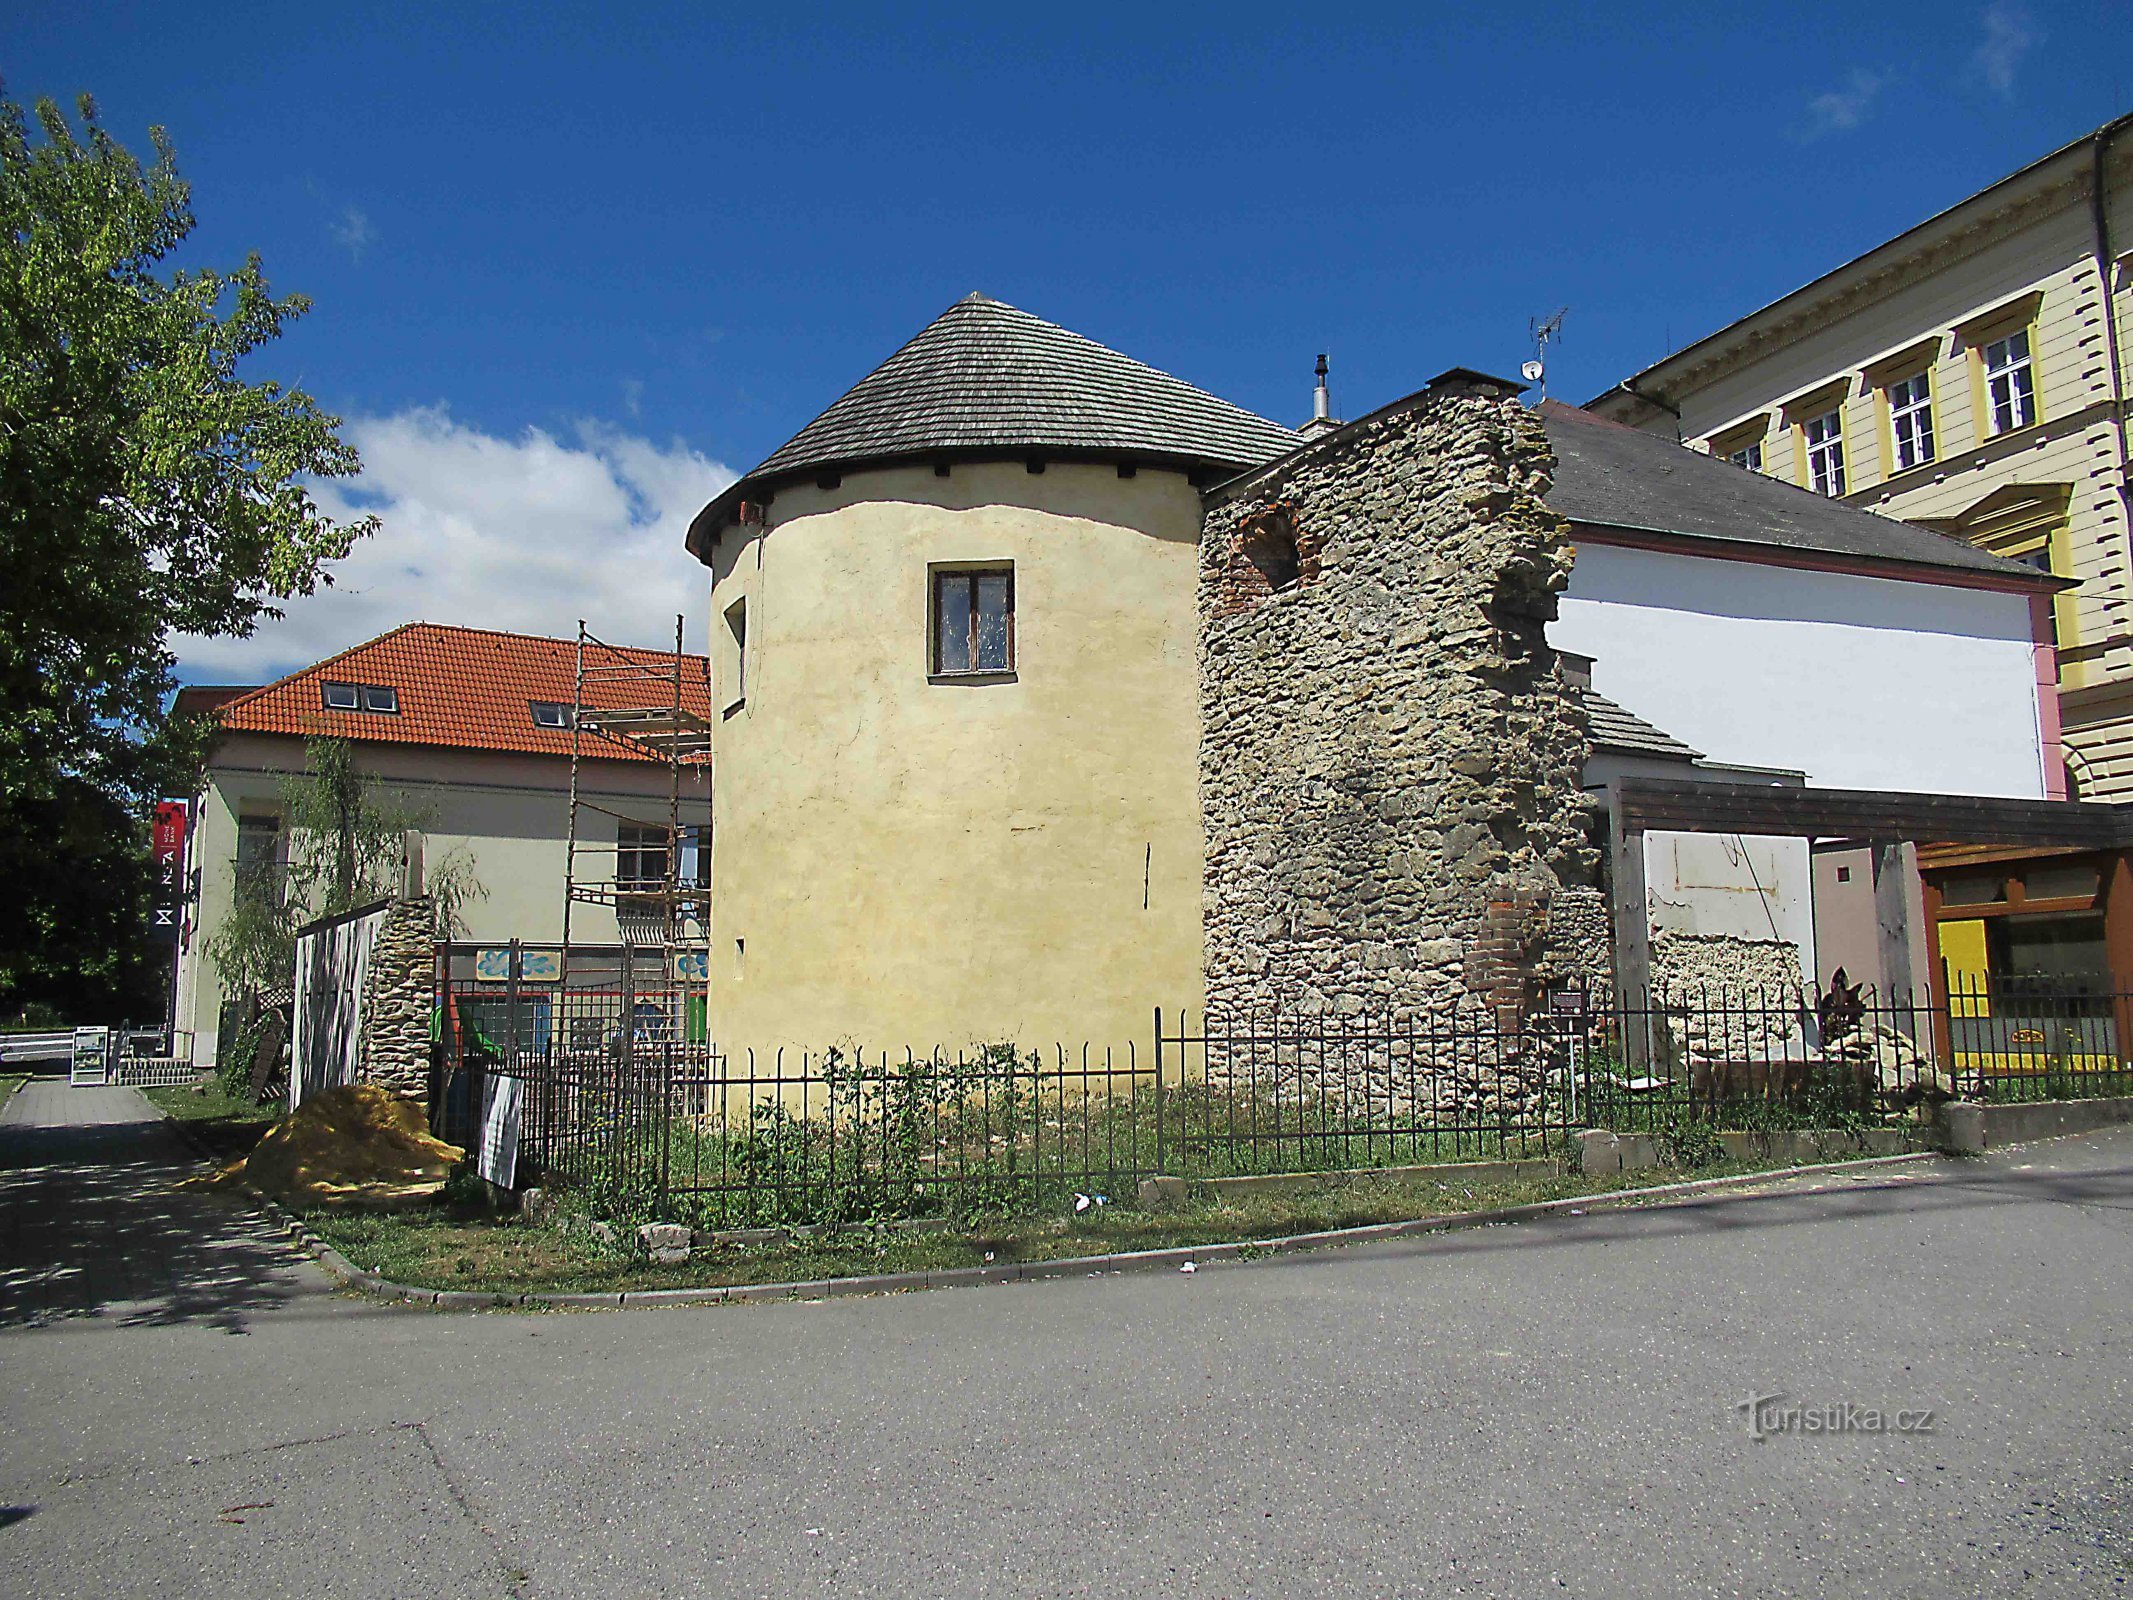 De overblijfselen van de vestingwerken van de stad in Svitavy